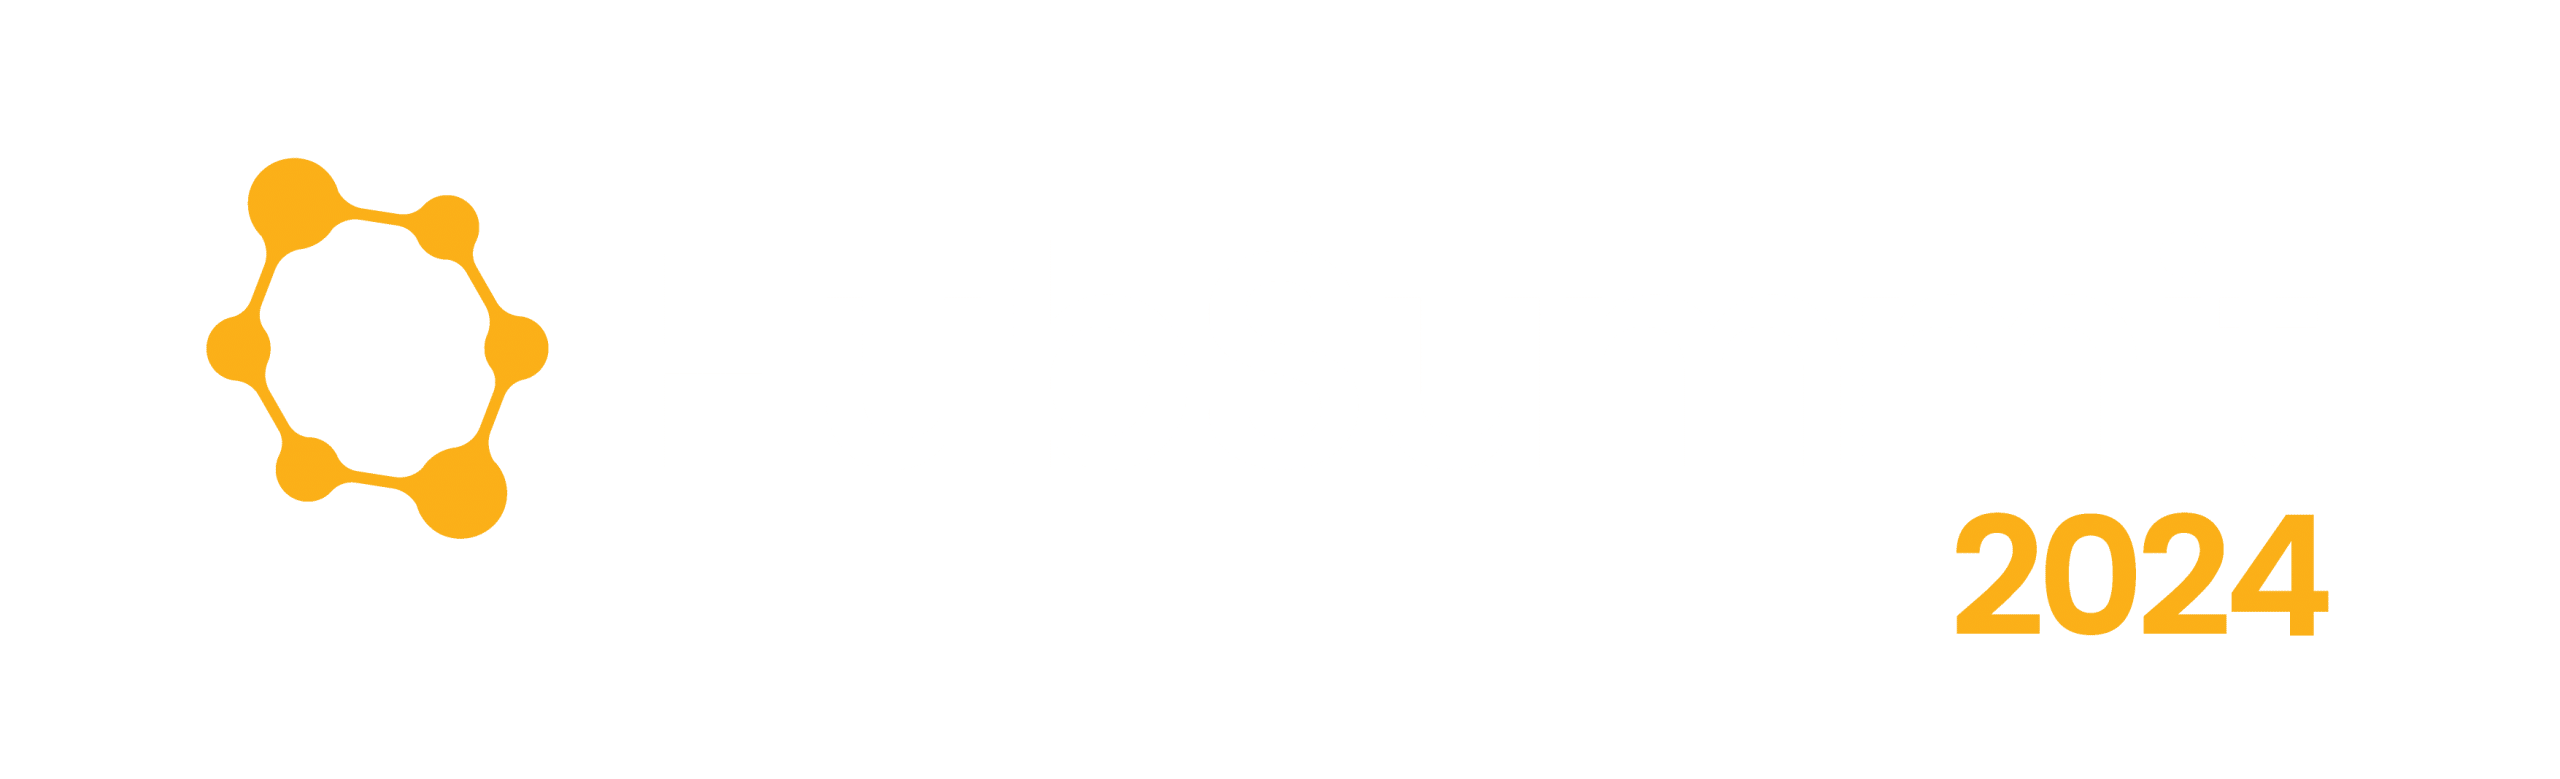 HubSummit 2024 logo